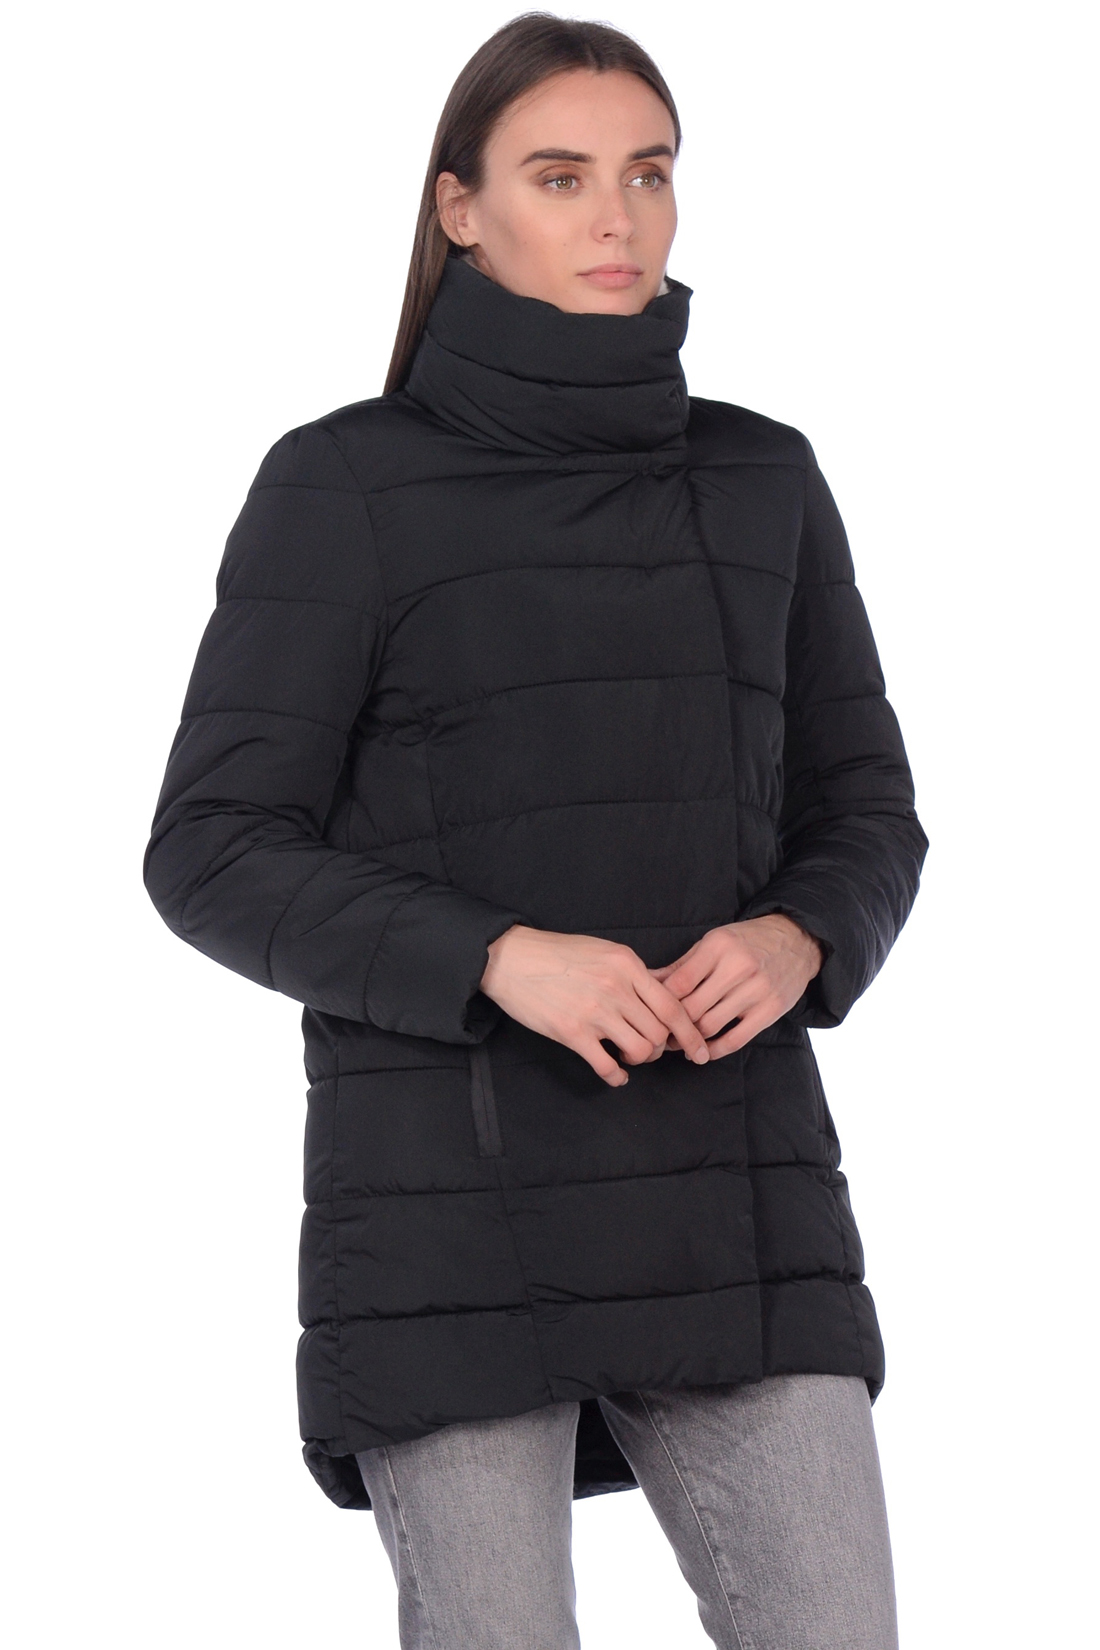 Чёрная куртка с удлинённой спинкой (арт. baon B039563), размер XXL, цвет черный Чёрная куртка с удлинённой спинкой (арт. baon B039563) - фото 1